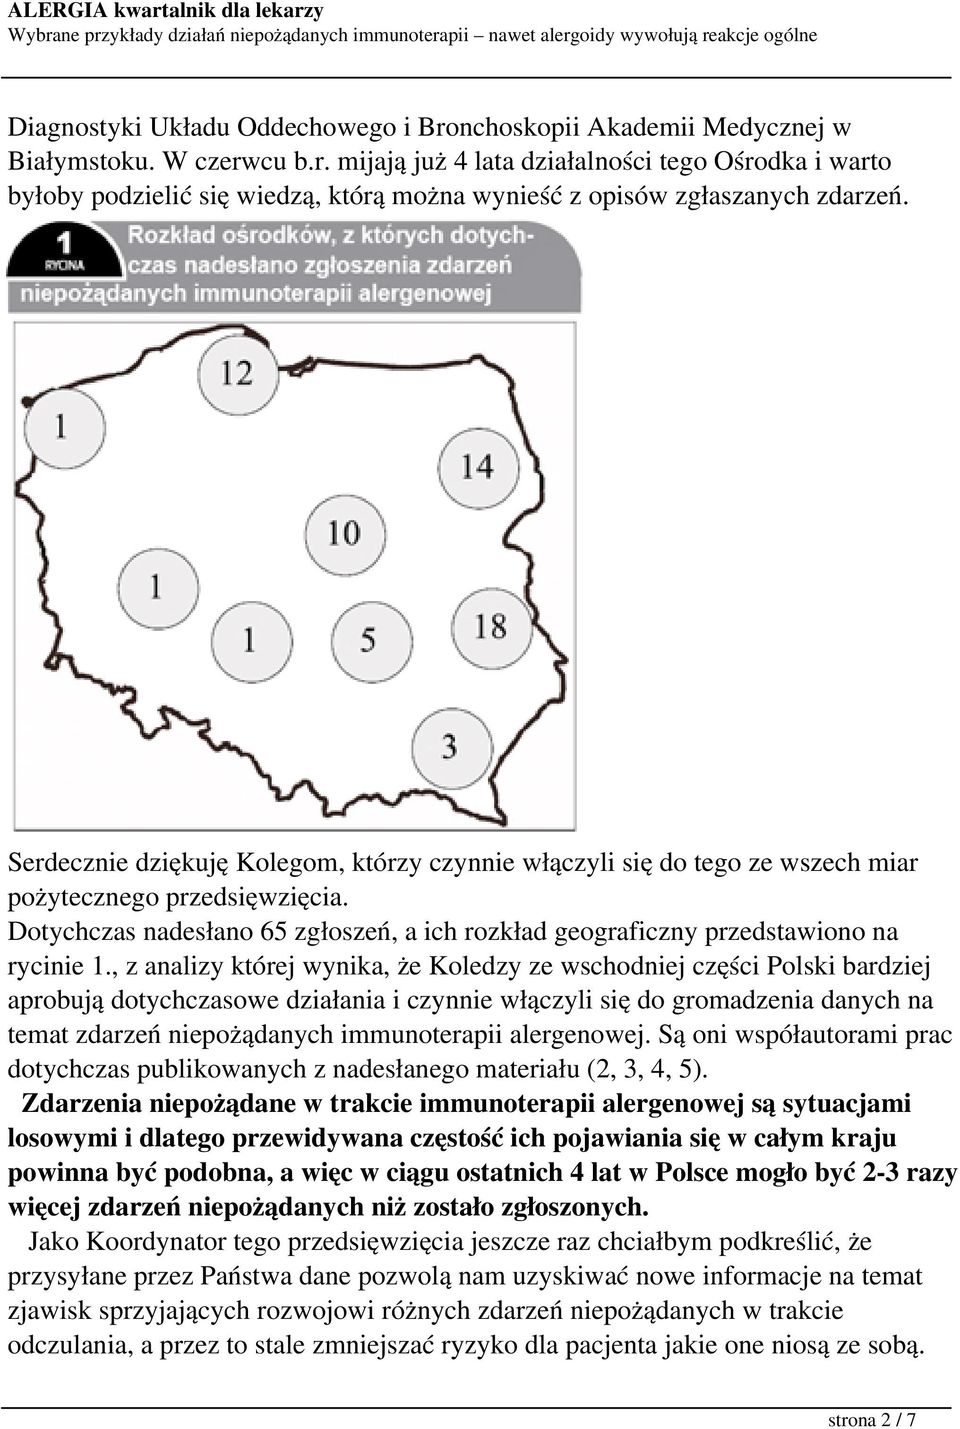 , z analizy której wynika, że Koledzy ze wschodniej części Polski bardziej aprobują dotychczasowe działania i czynnie włączyli się do gromadzenia danych na temat zdarzeń niepożądanych immunoterapii